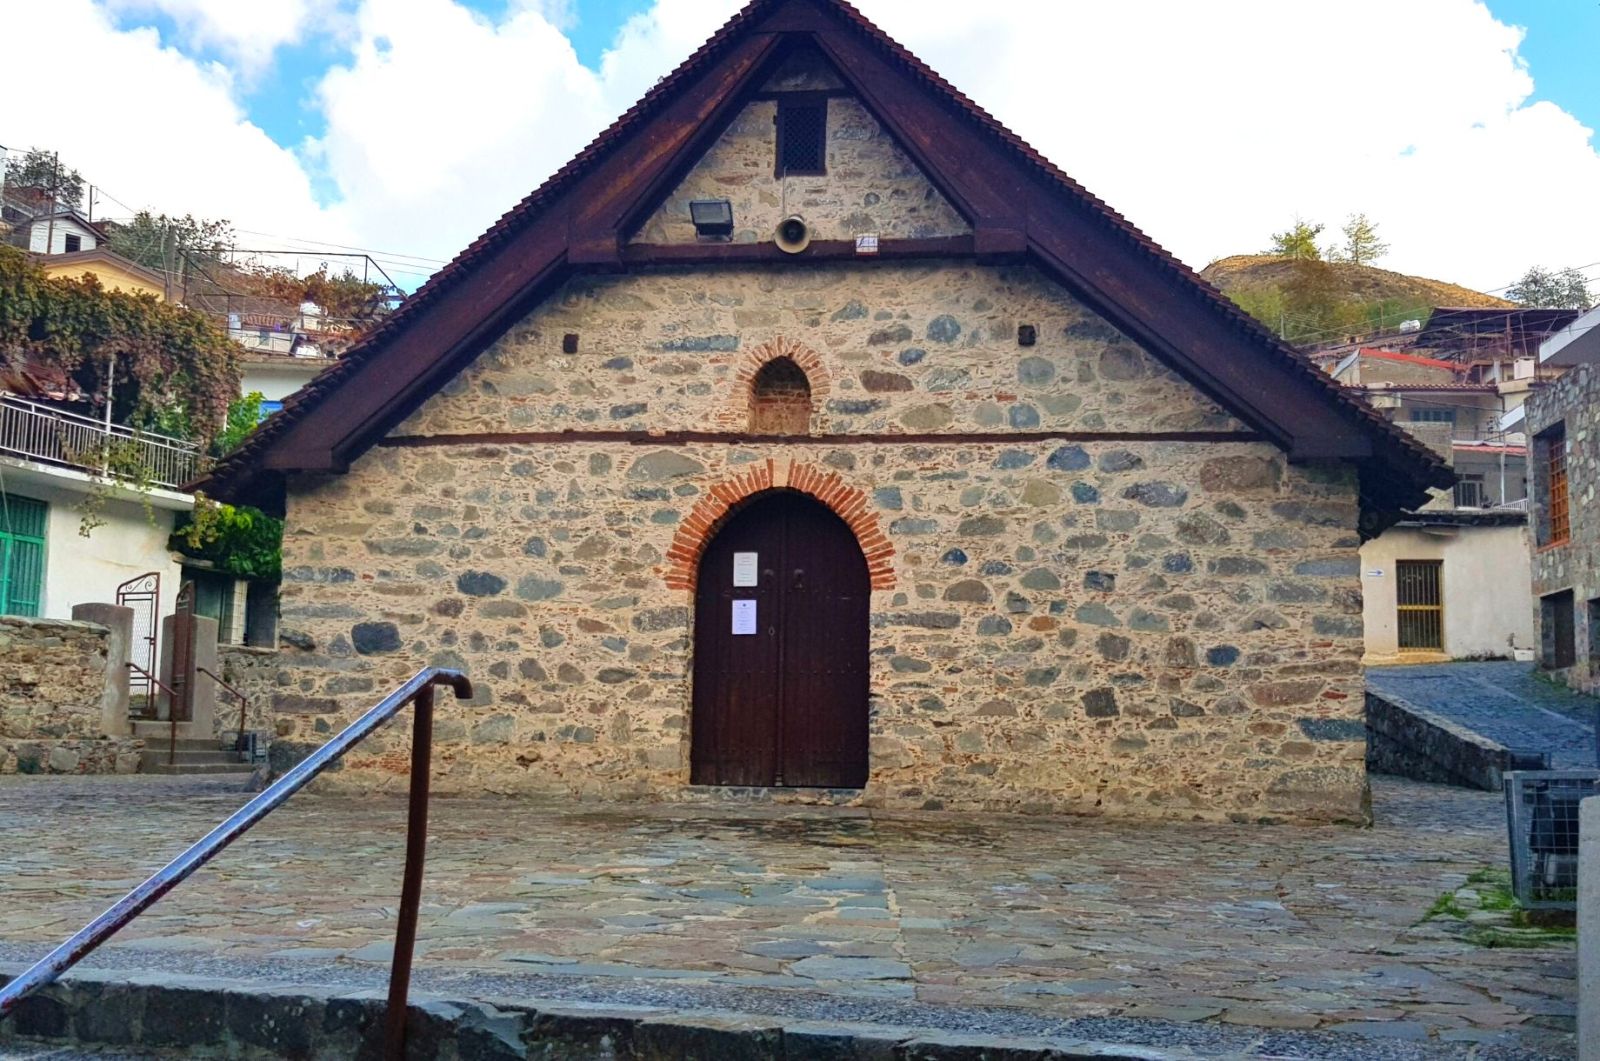  Church of Panagia Chrysopantanassa in Palaichori